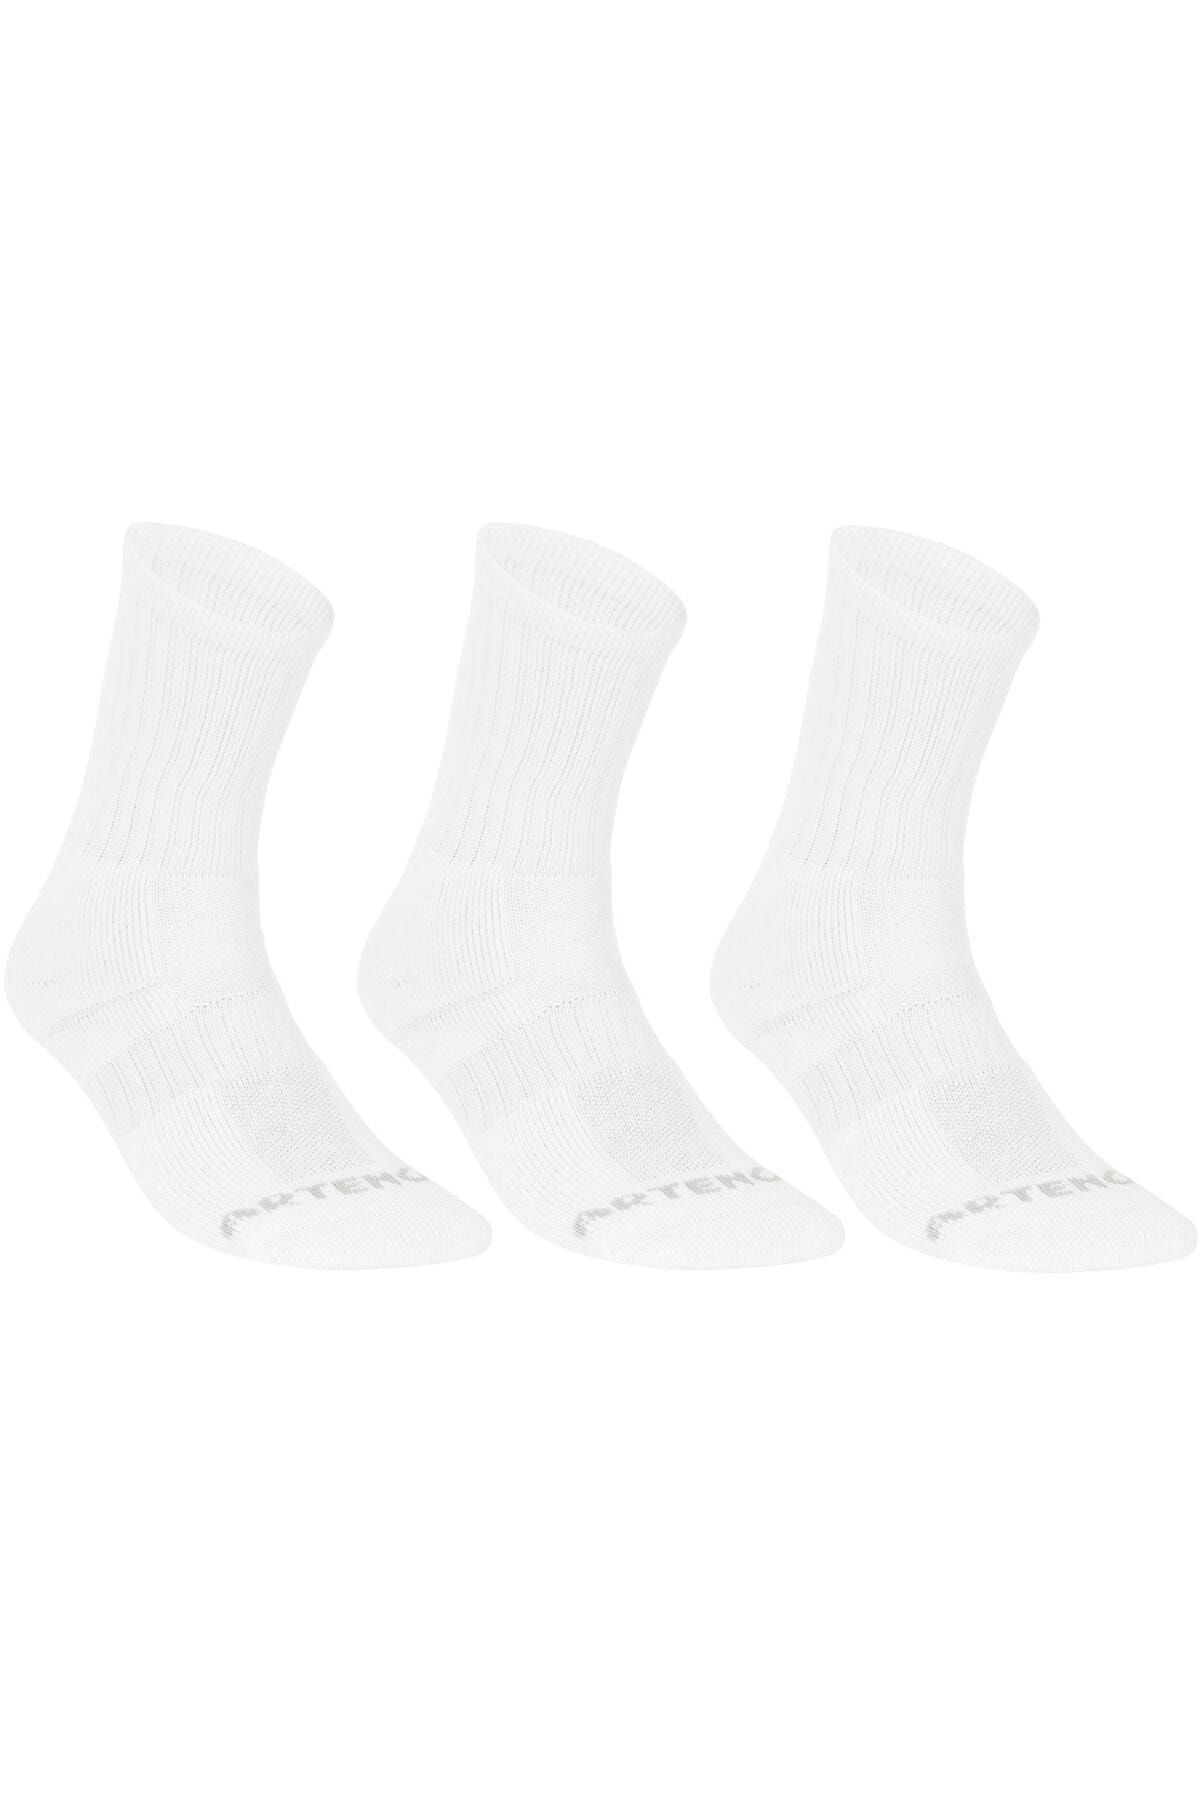 Decathlon Artengo - Tenis Çorabı Uzun Konçlu 3 Lü Paket Beyaz Rs 500